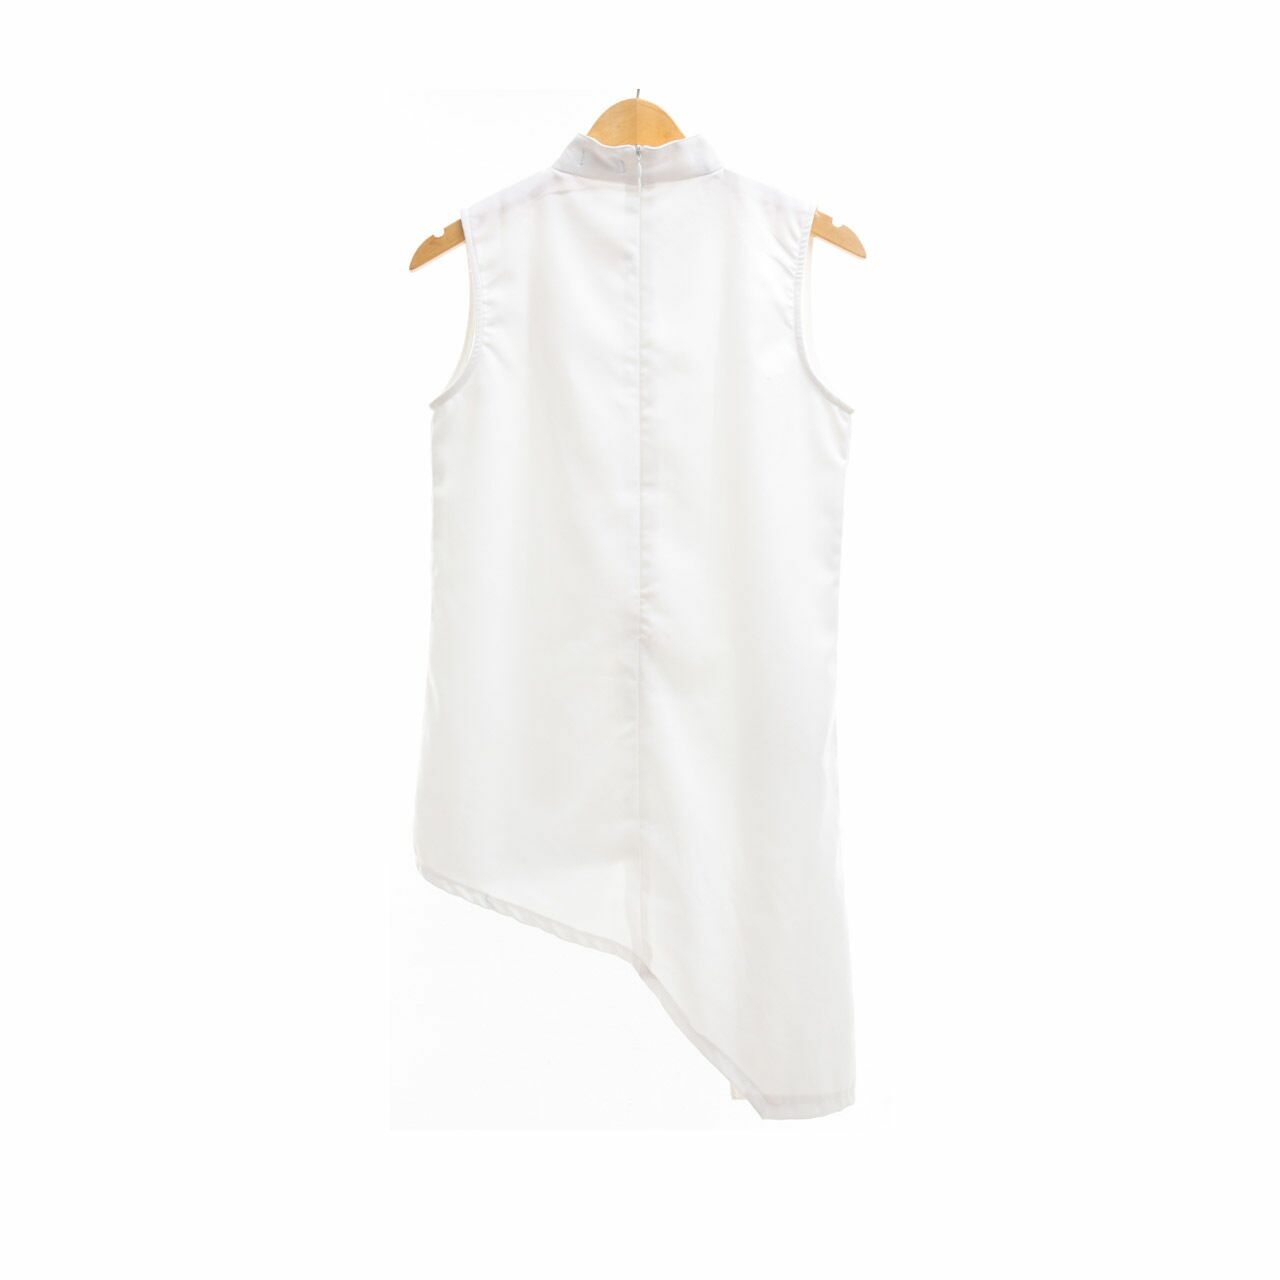 Ralyne Clothing White Asymmetric Sleeveless